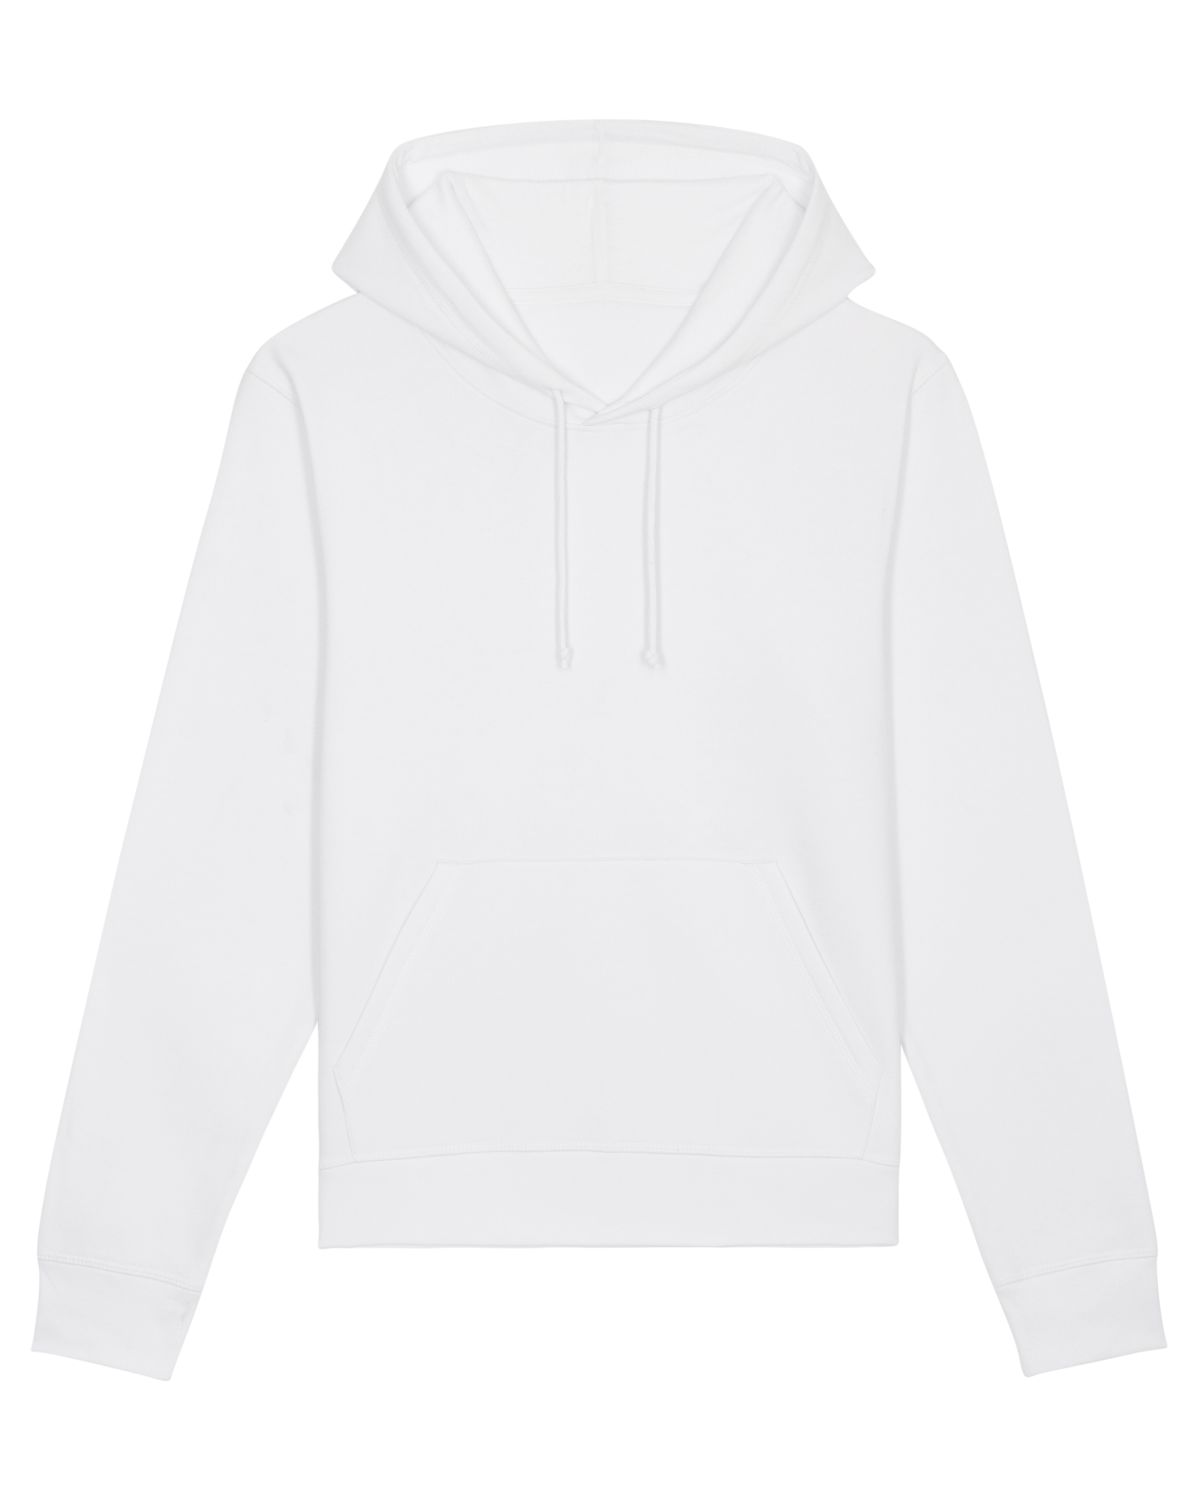 The Essential Unisex Hoodie Sweatshirt